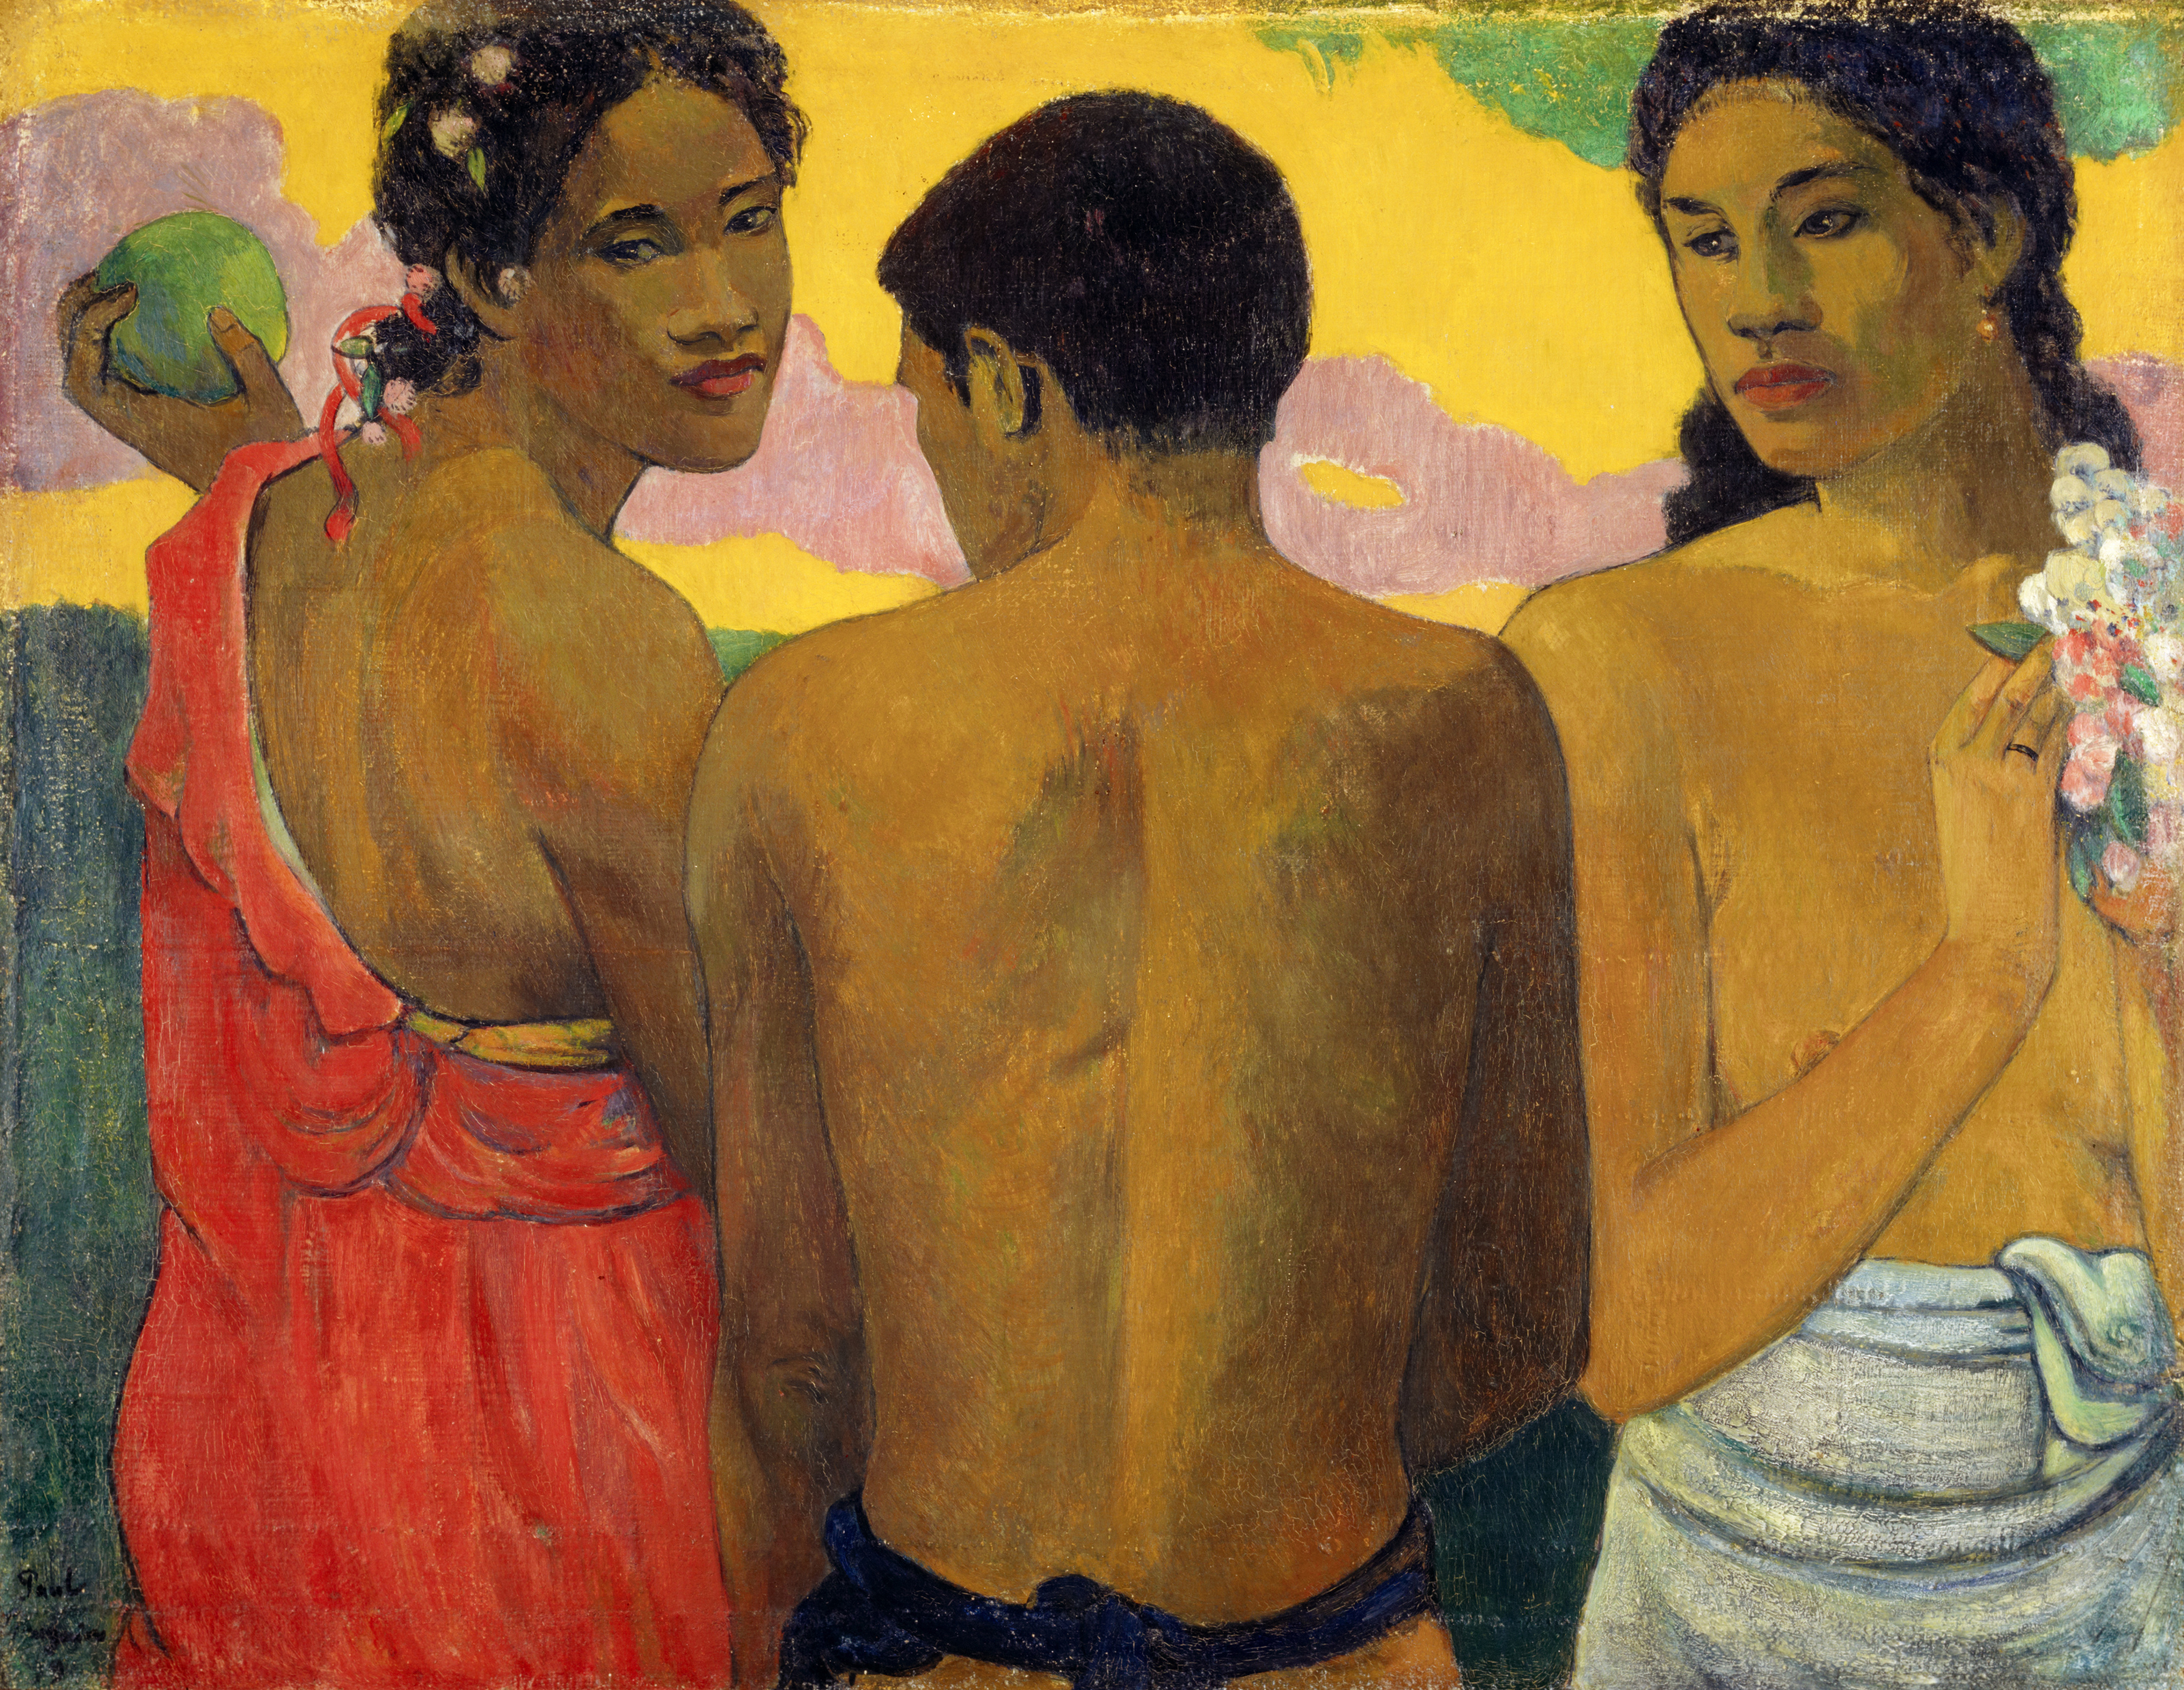 세 명의 타히티인 by Paul Gauguin - 1899 - 73.00 x 94.00 cm 